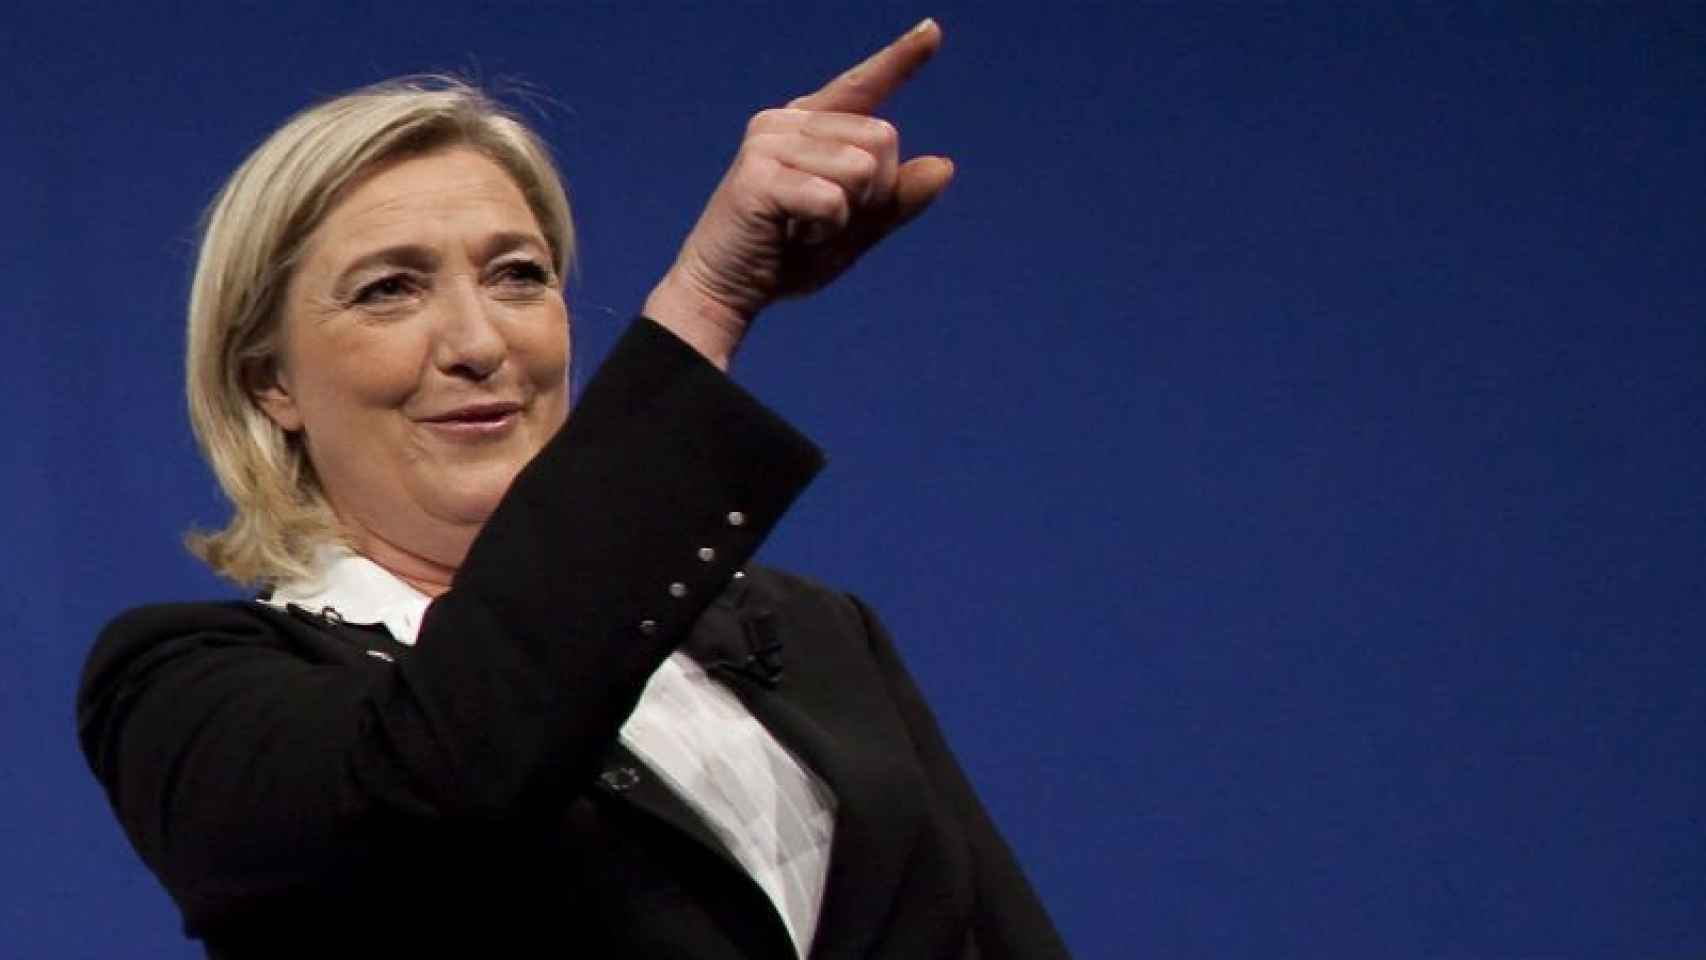 La presidenta del Frente Nacional francés, Marine Le Pen, en una imagen de archivo.